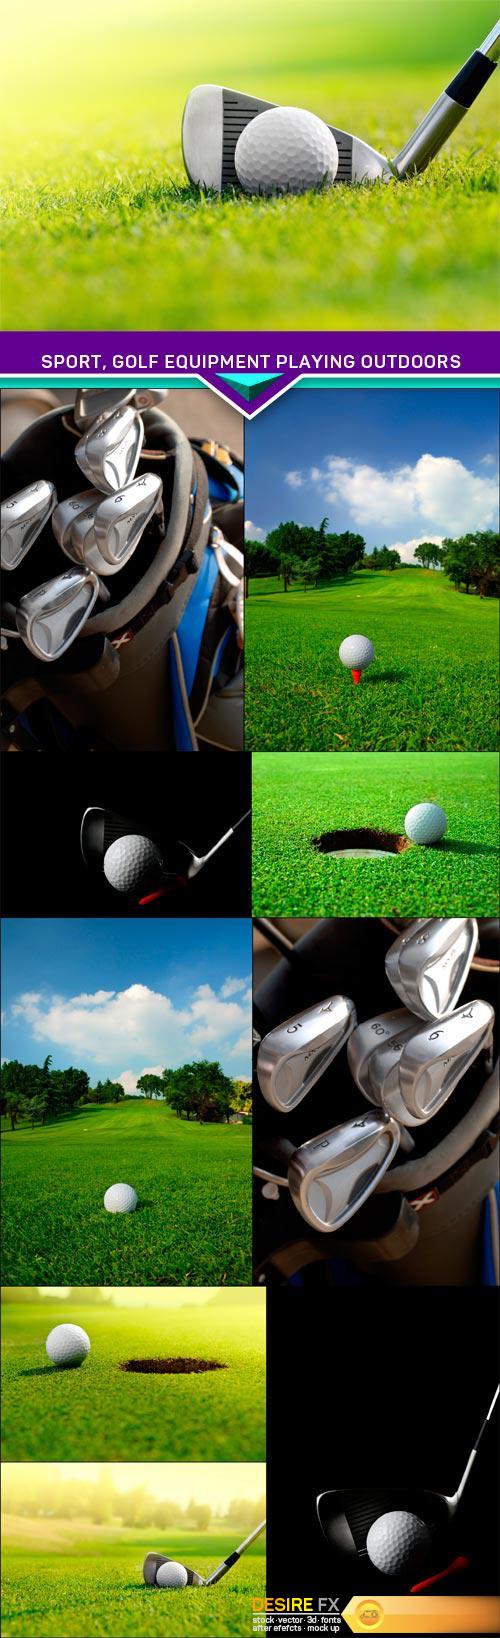 Sport, golf equipment playing outdoors 10X JPEG